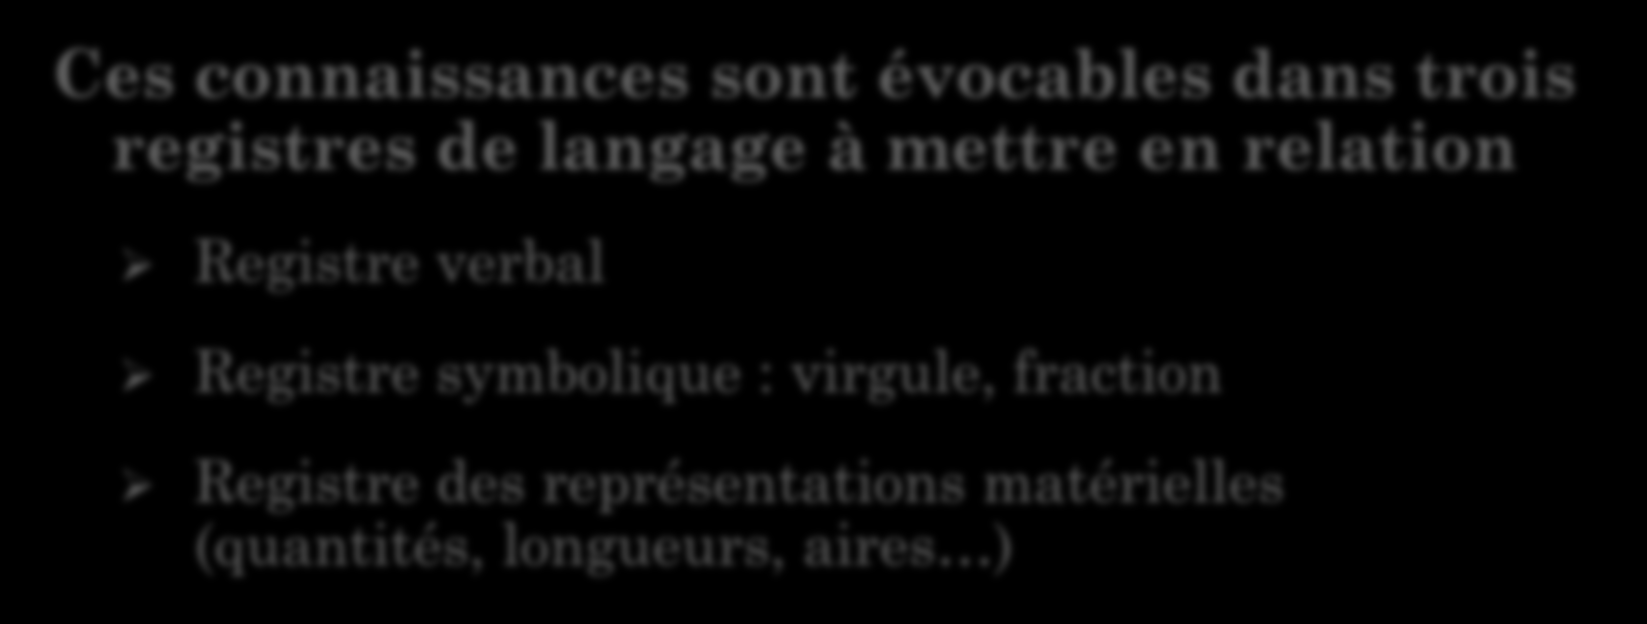 Ces connaissances sont évocables dans trois registres de langage à mettre en relation Registre verbal